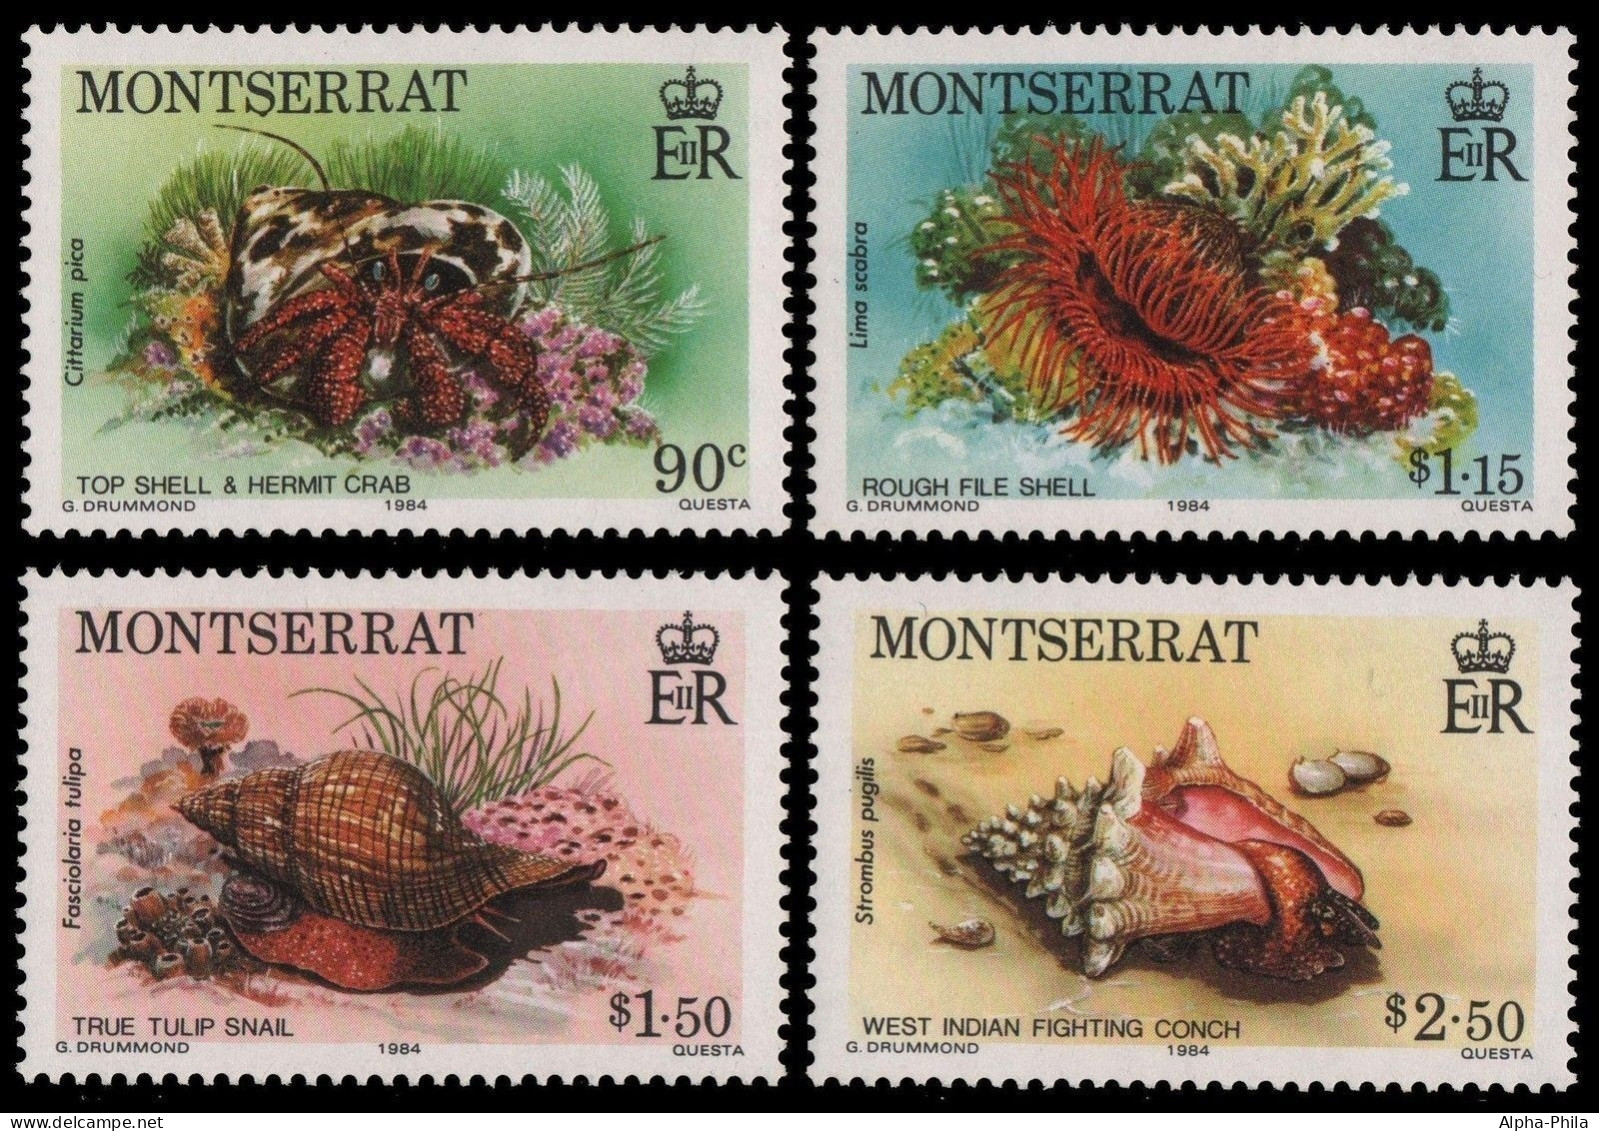 Montserrat 1984 - Mi-Nr. 557-560 ** - MNH - Meeresleben / Marine Life - Montserrat